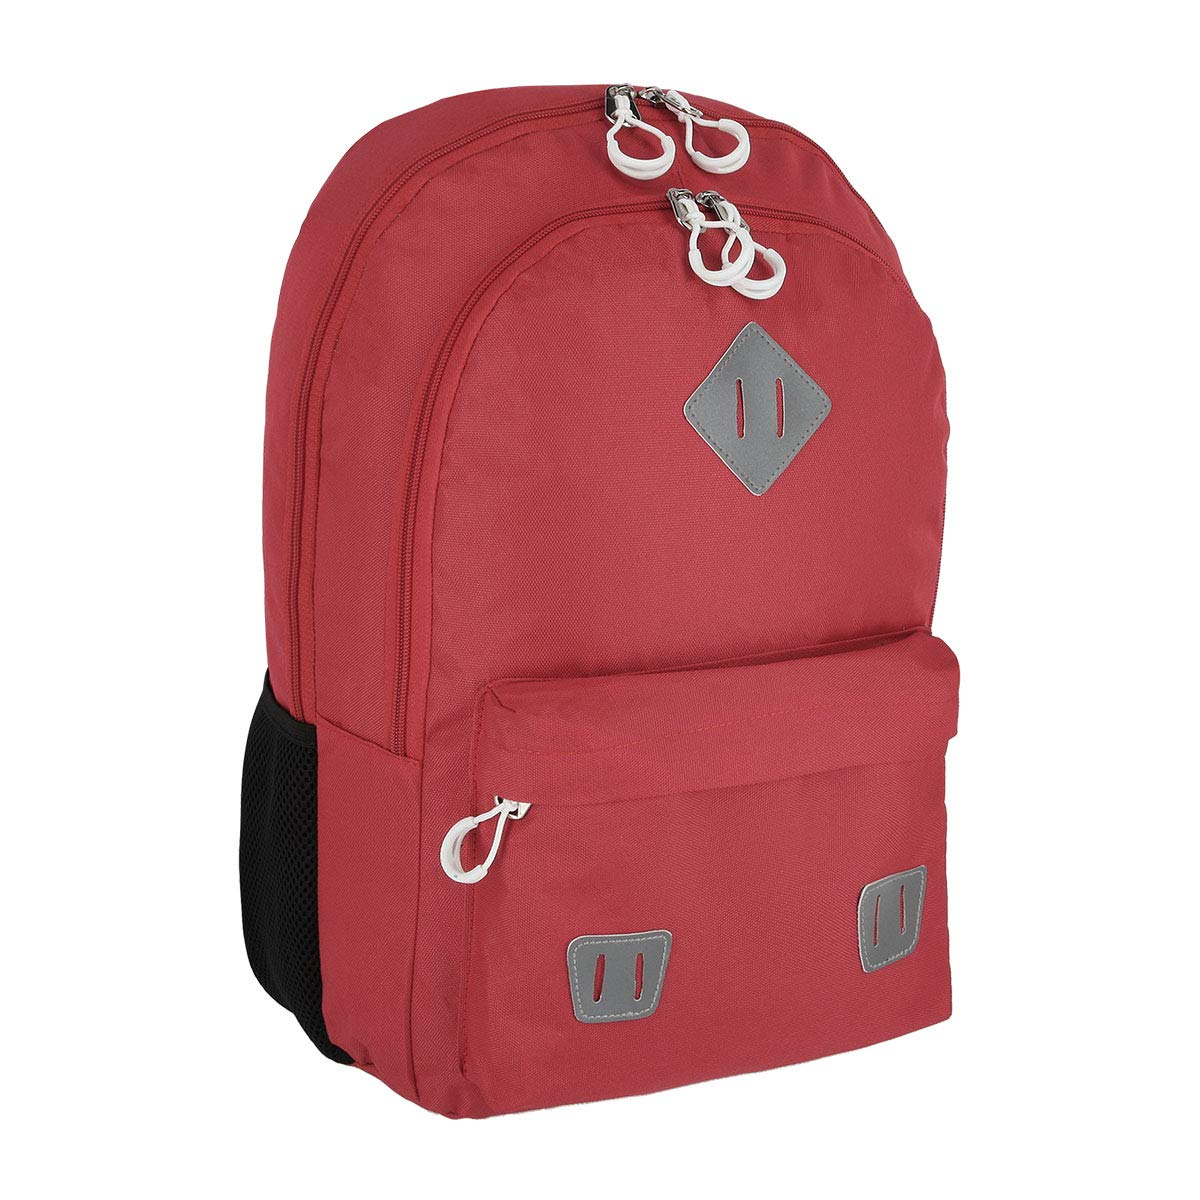 SPIRIT 407976 Rucksack Schulrucksack Schoolbag Schultasche große Kapazität Reisetasche Jungen Mädchen SHADE 03, Rot